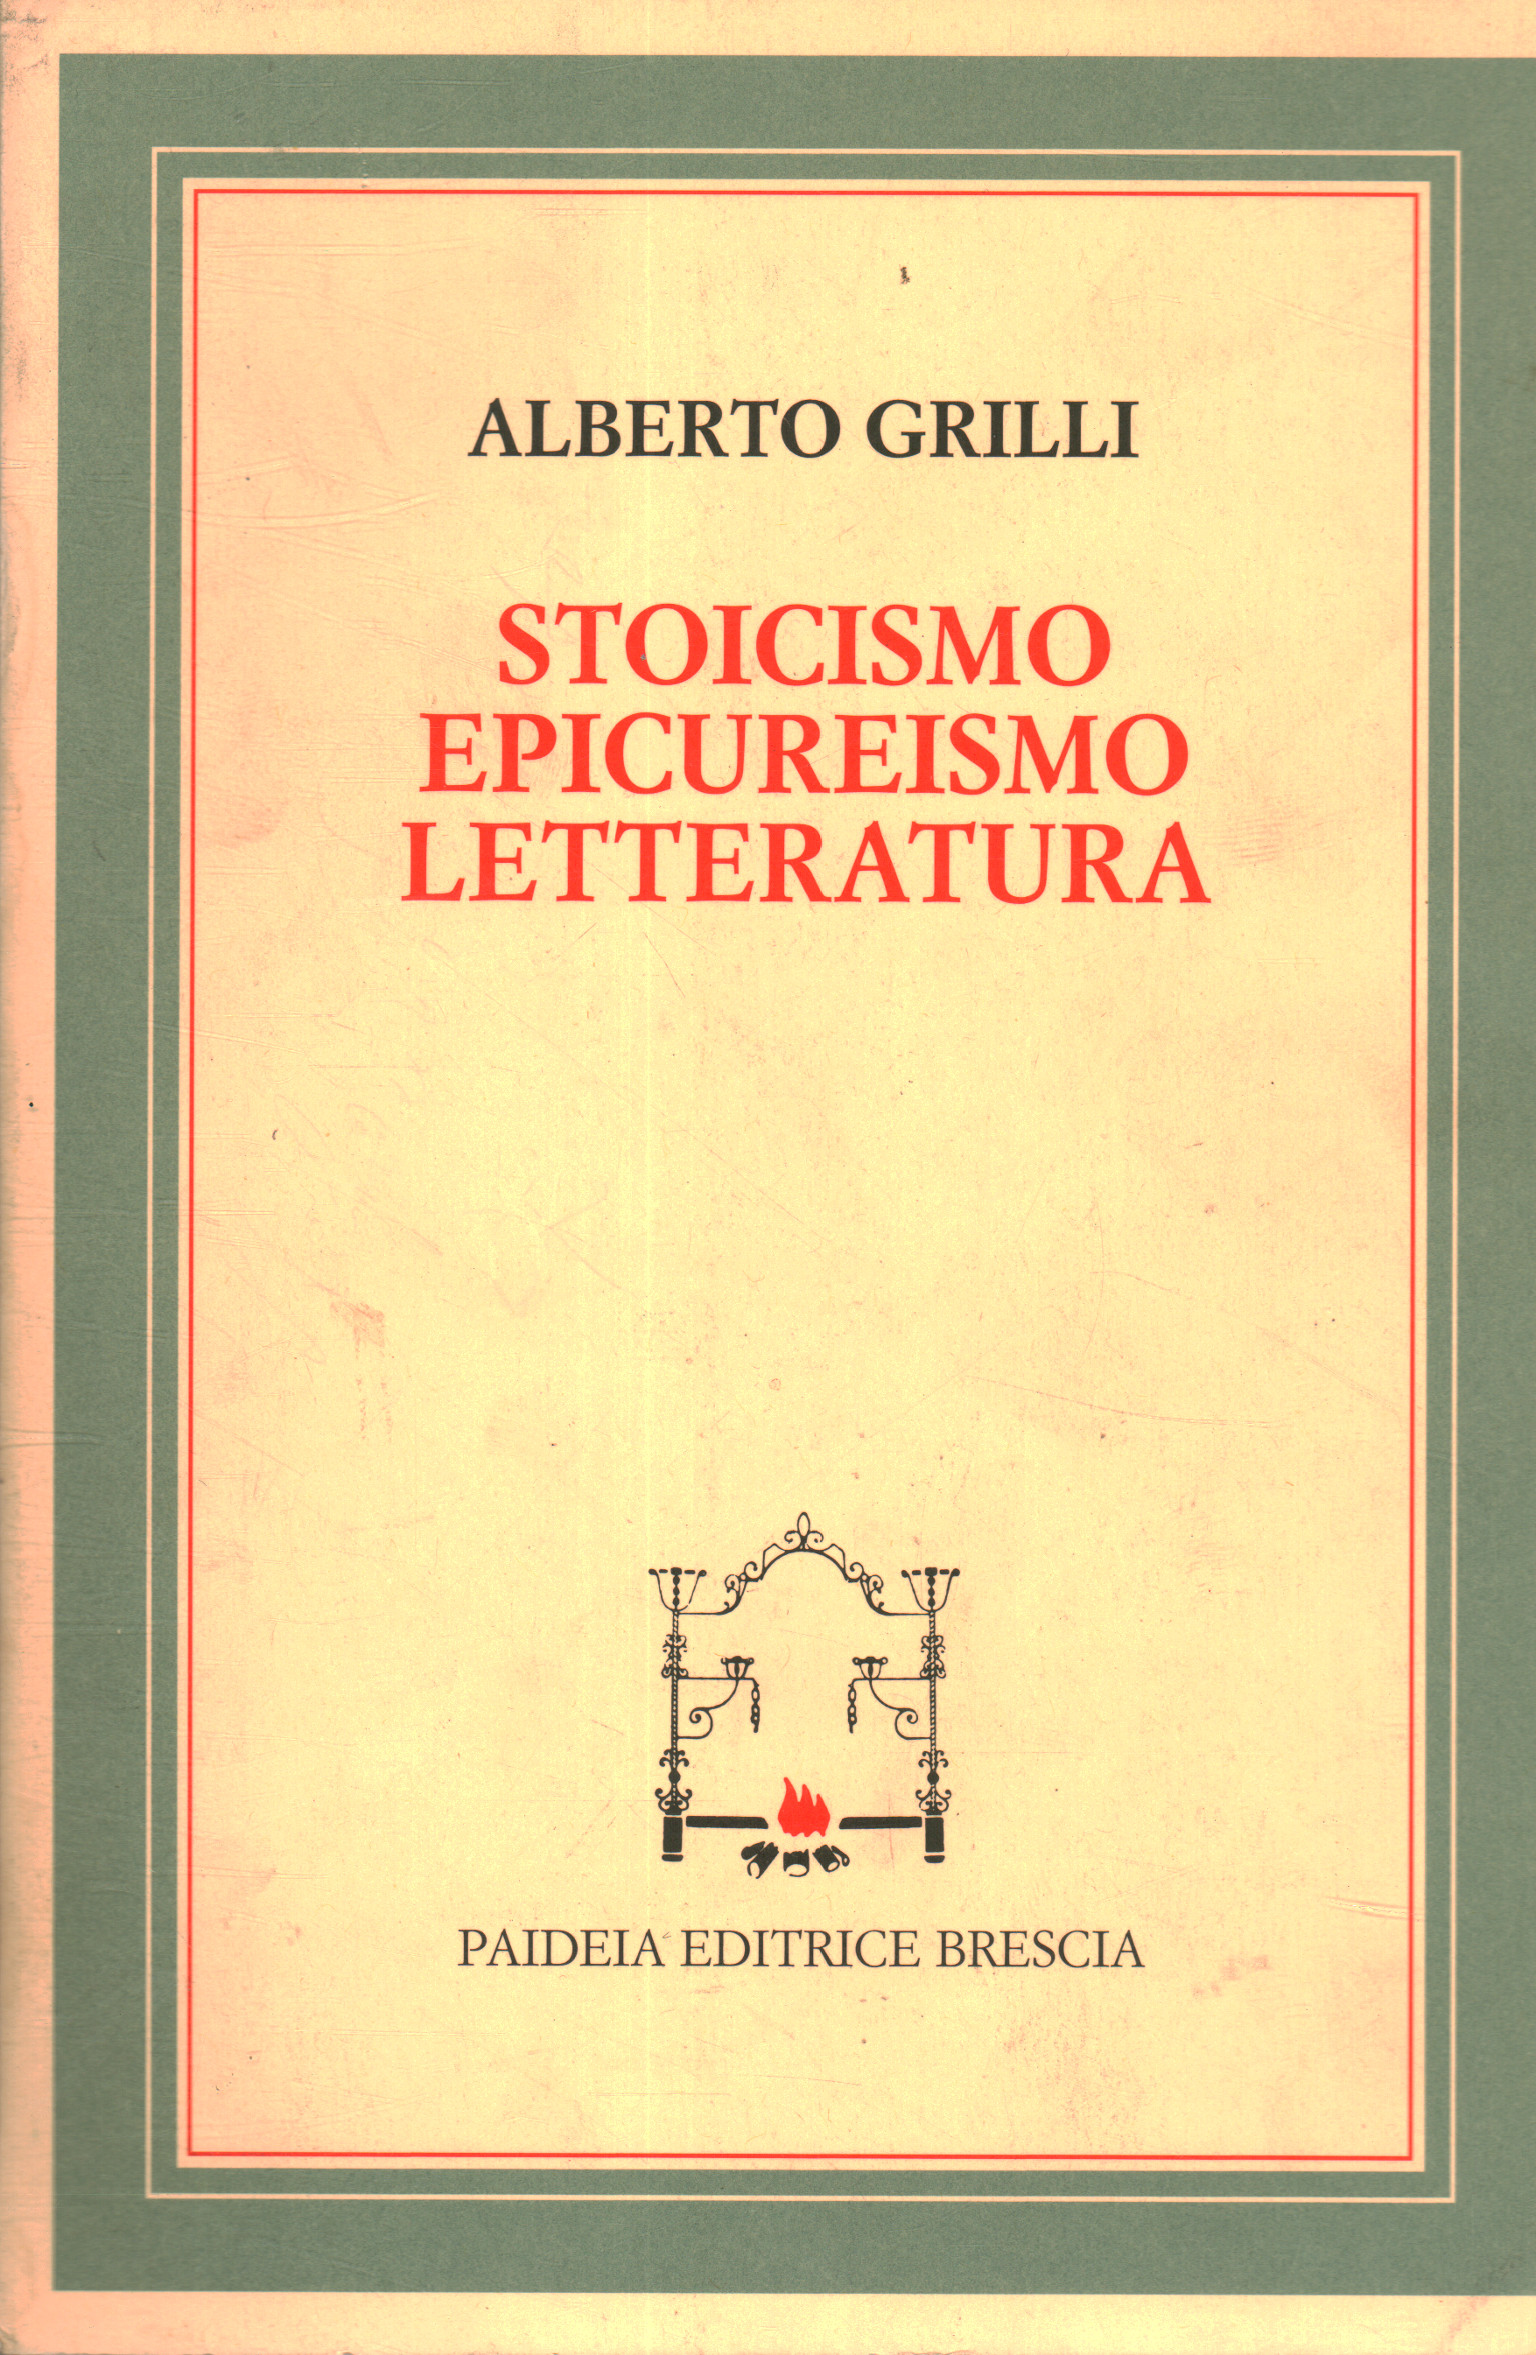 Estoicismo Epicureísmo y literatura, Alberto Grilli